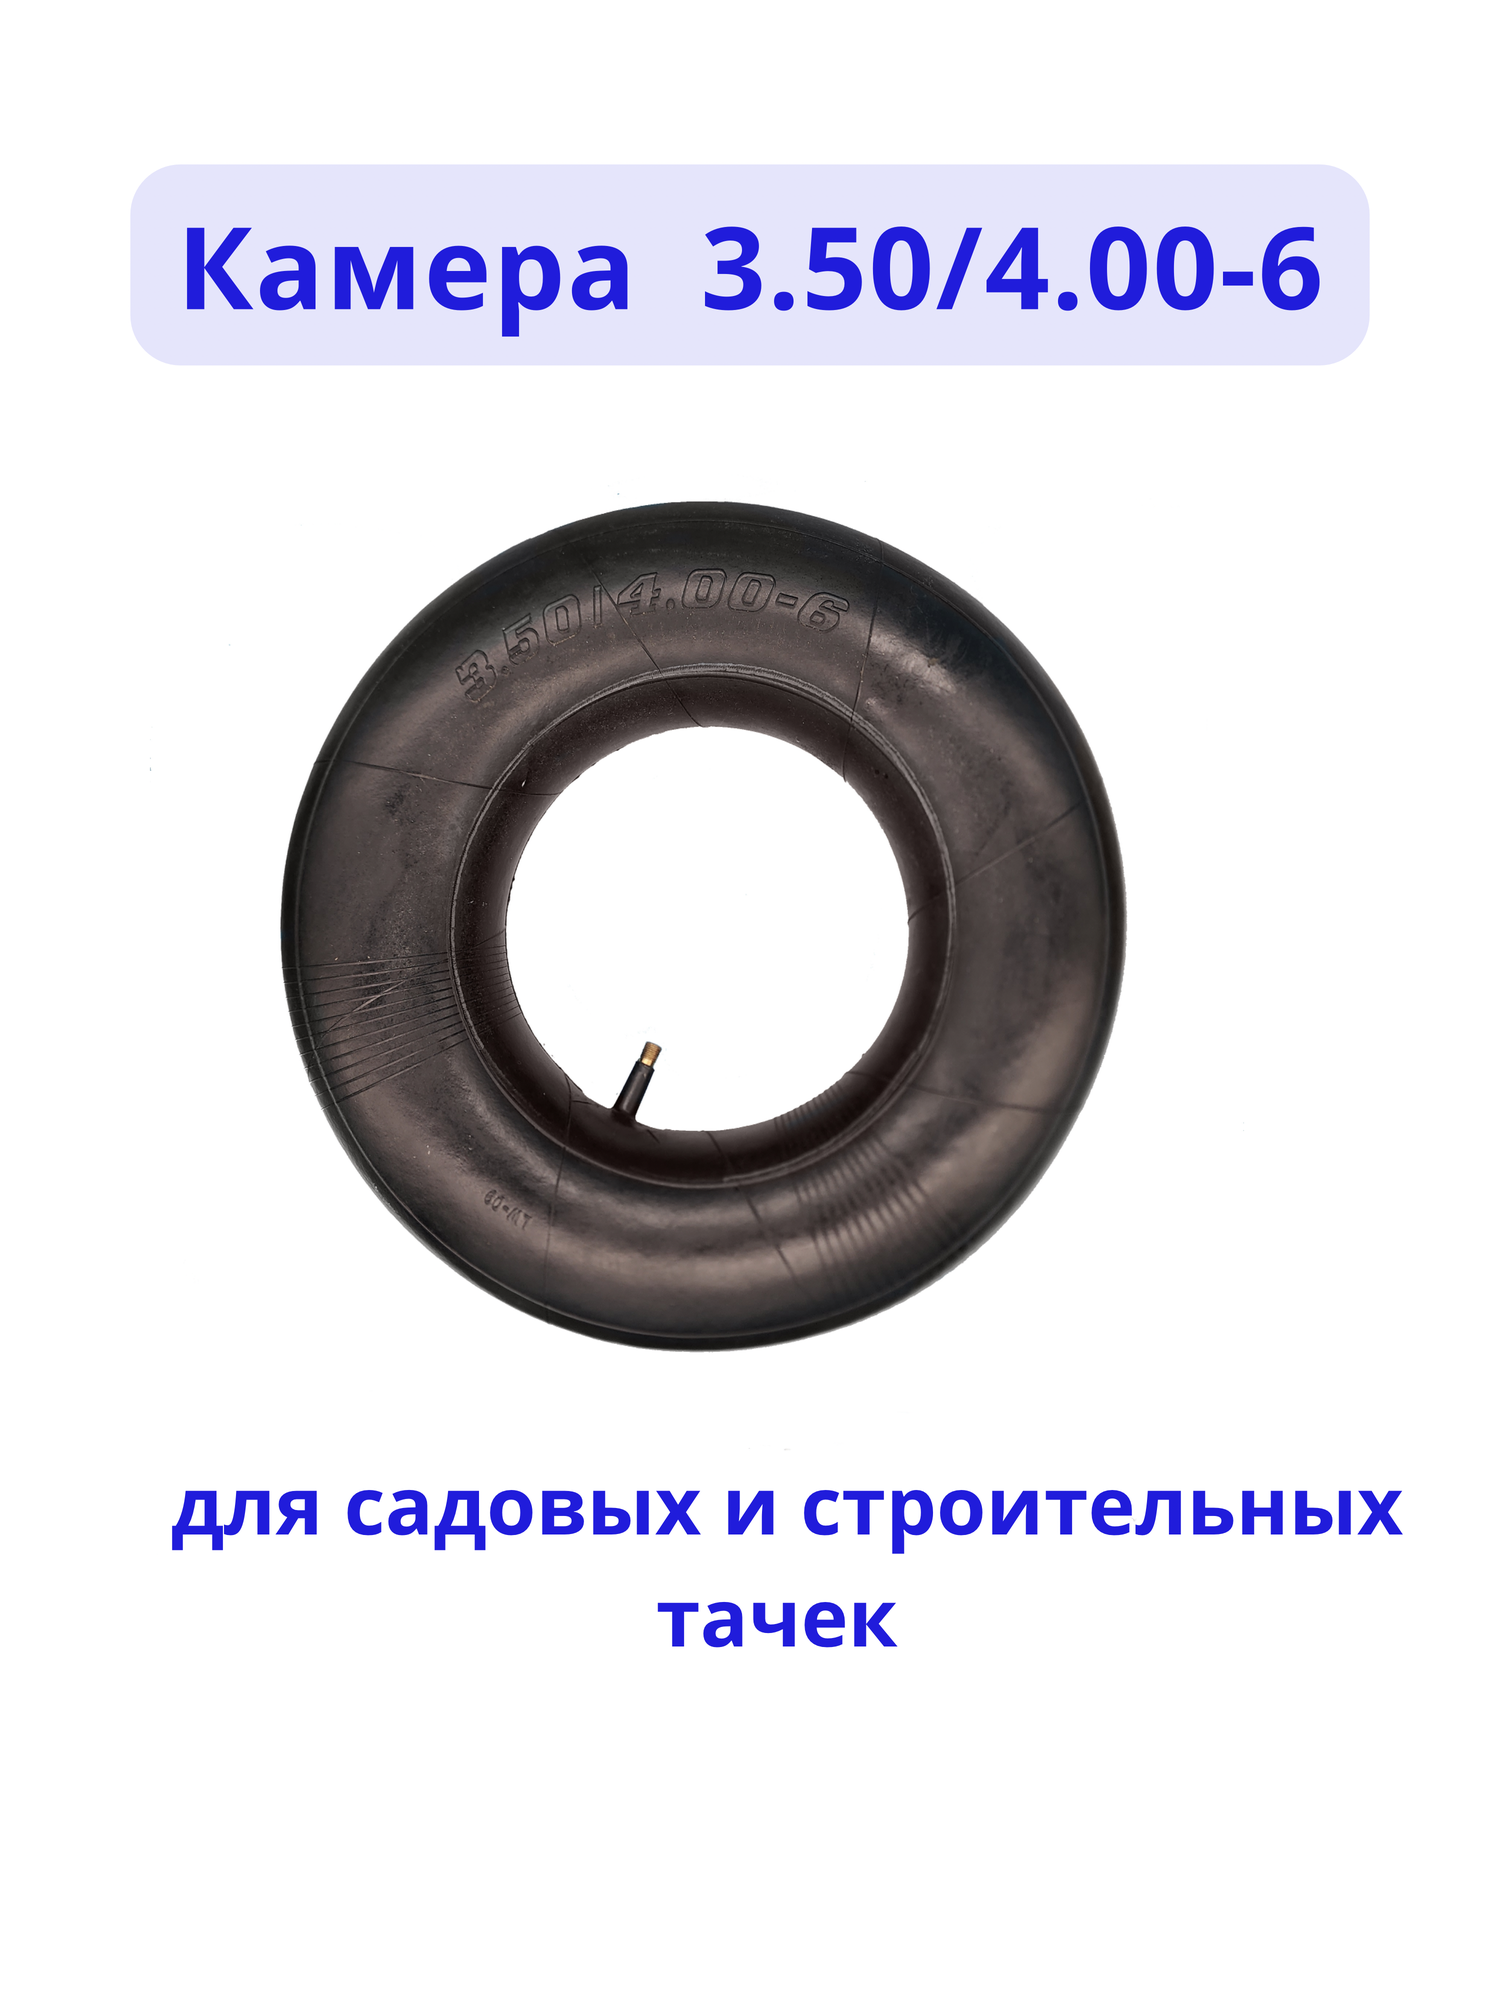 Камера для колеса тачки 3.50/4.00-6 высокое качество